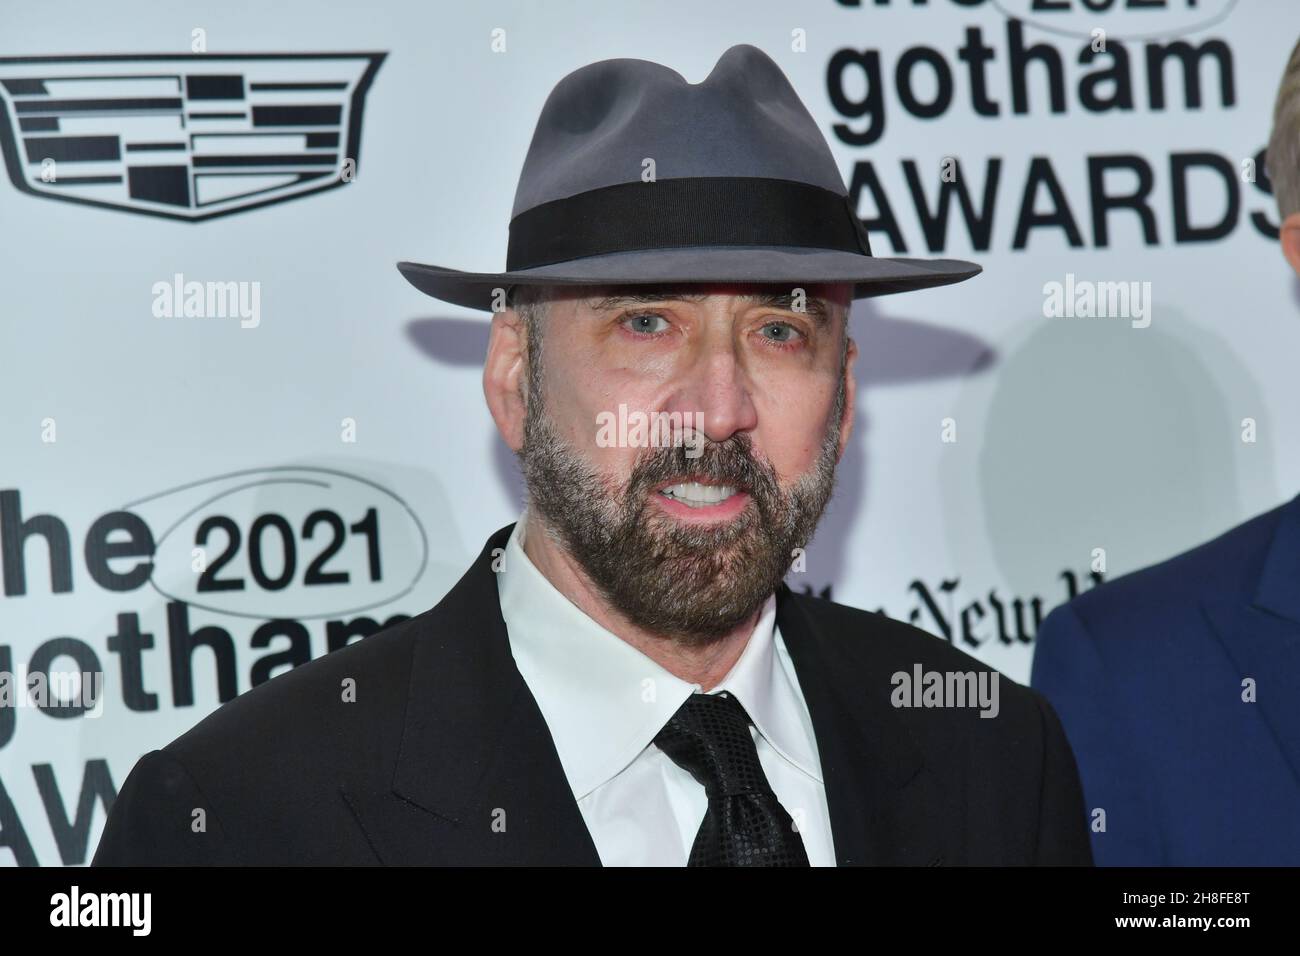 Nicolas Cage partecipa ai Gotham Awards 2021 presentati dal Gotham Film & Media Institute il 29 novembre 2021 a New York. Foto Stock